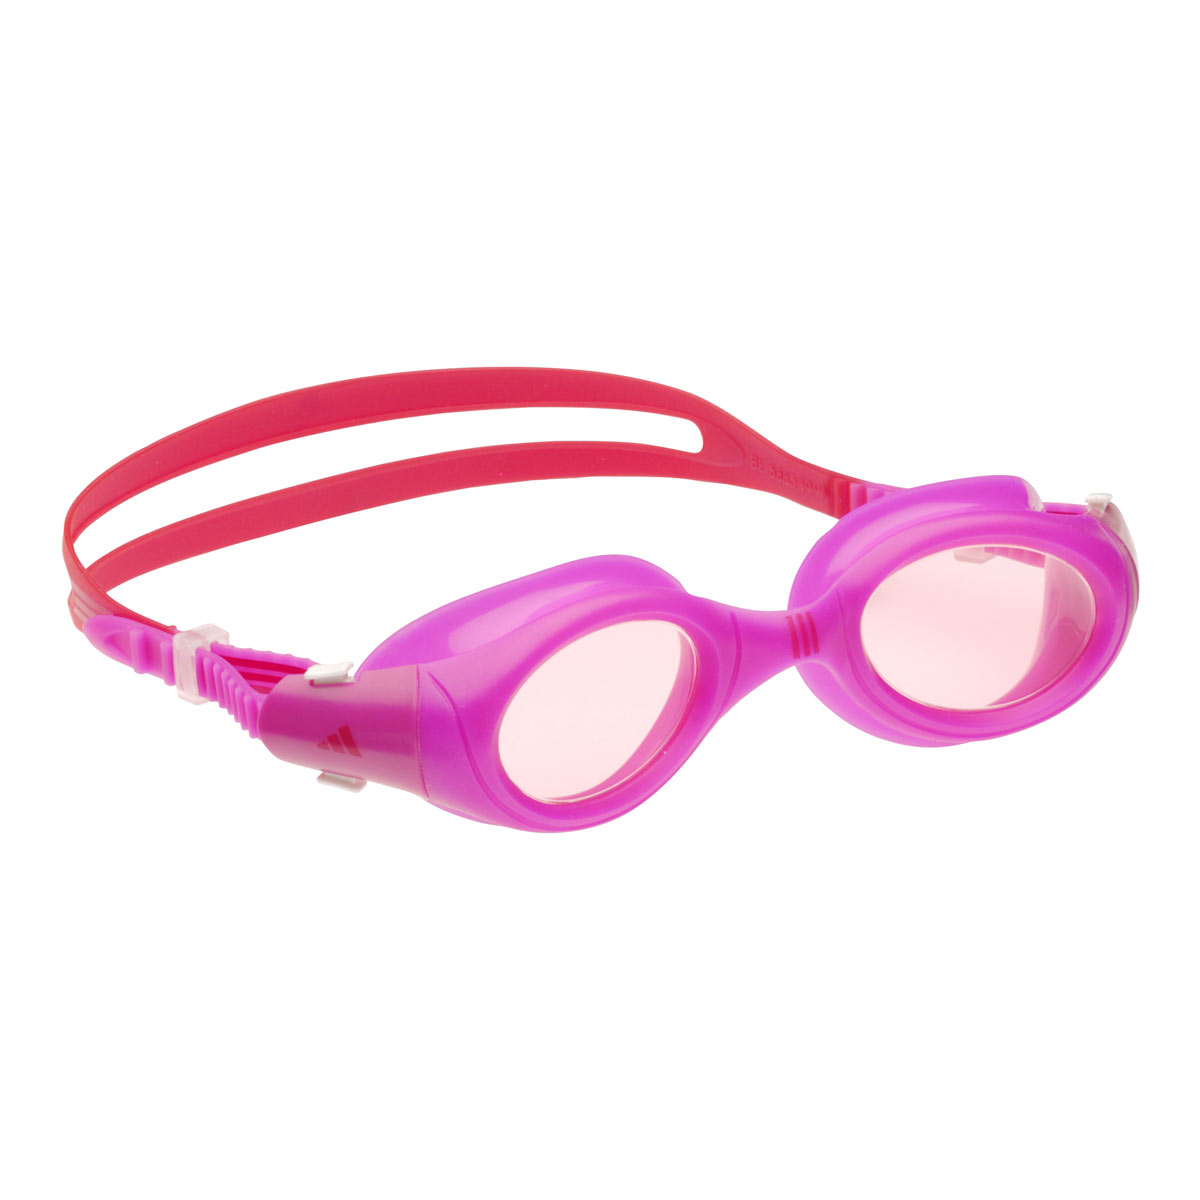 Adidas Aquazilla Junior Goggles - Pink / Red